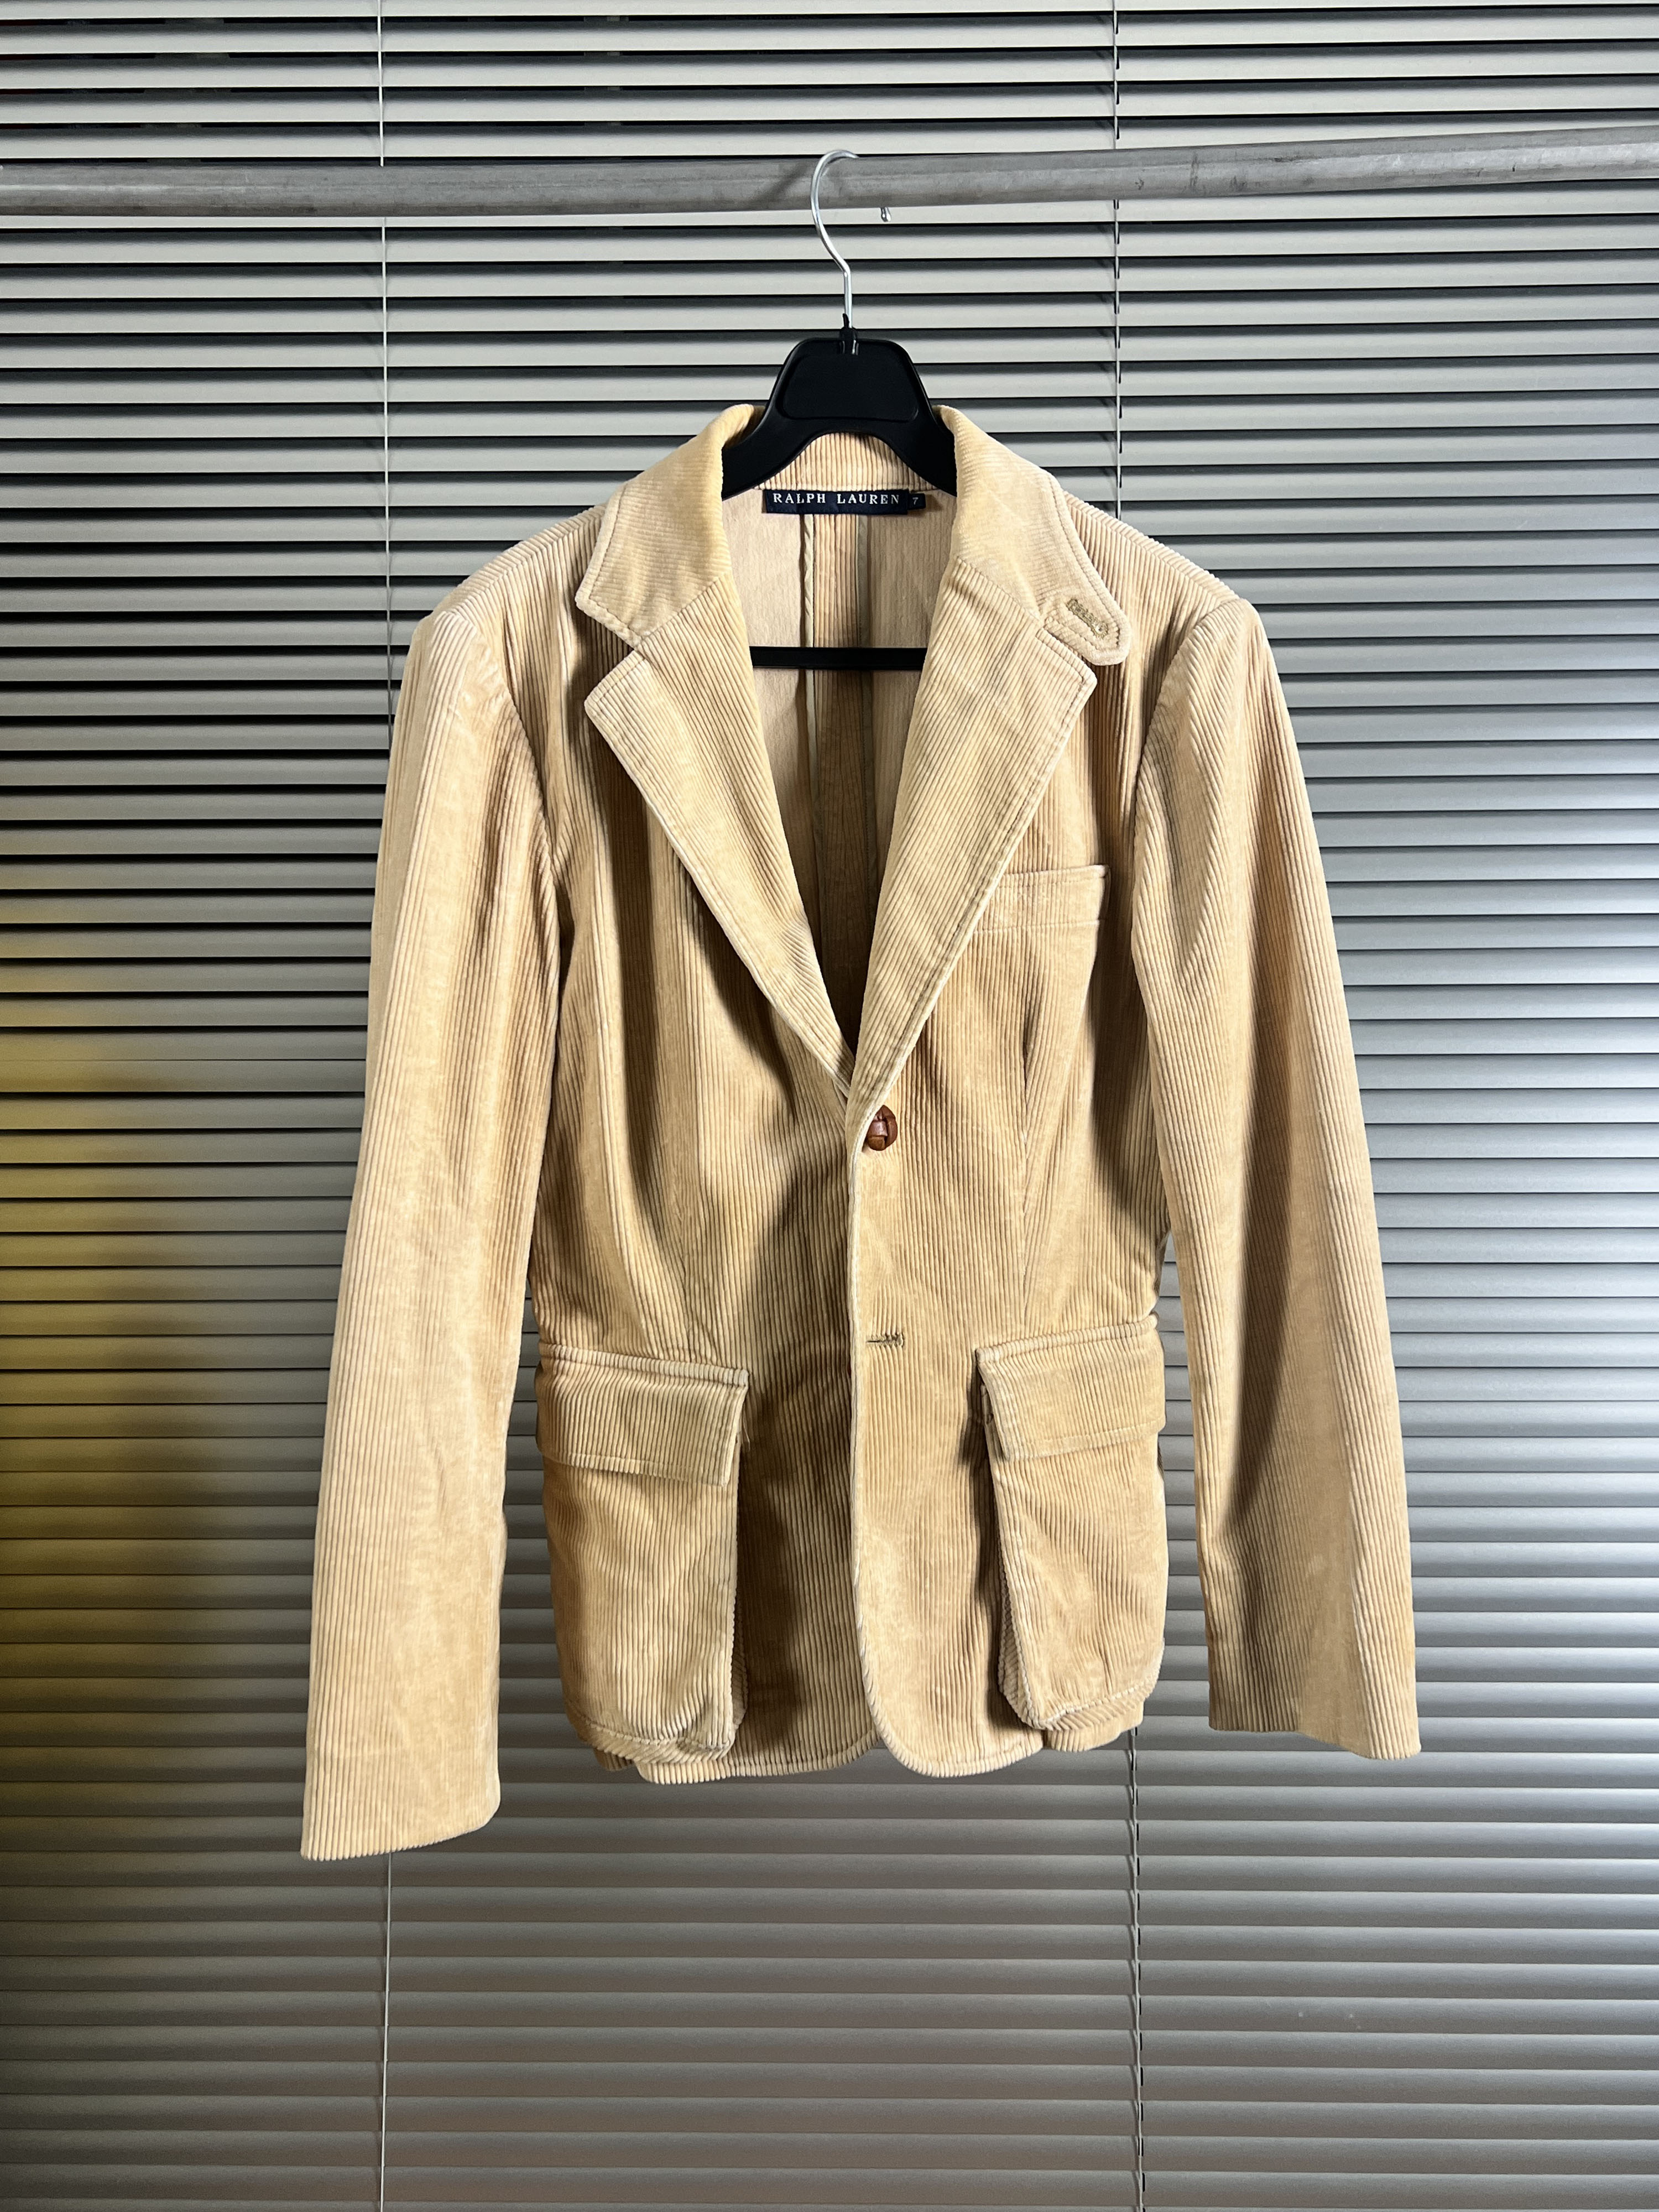 Ralph Lauren corduroy jacket